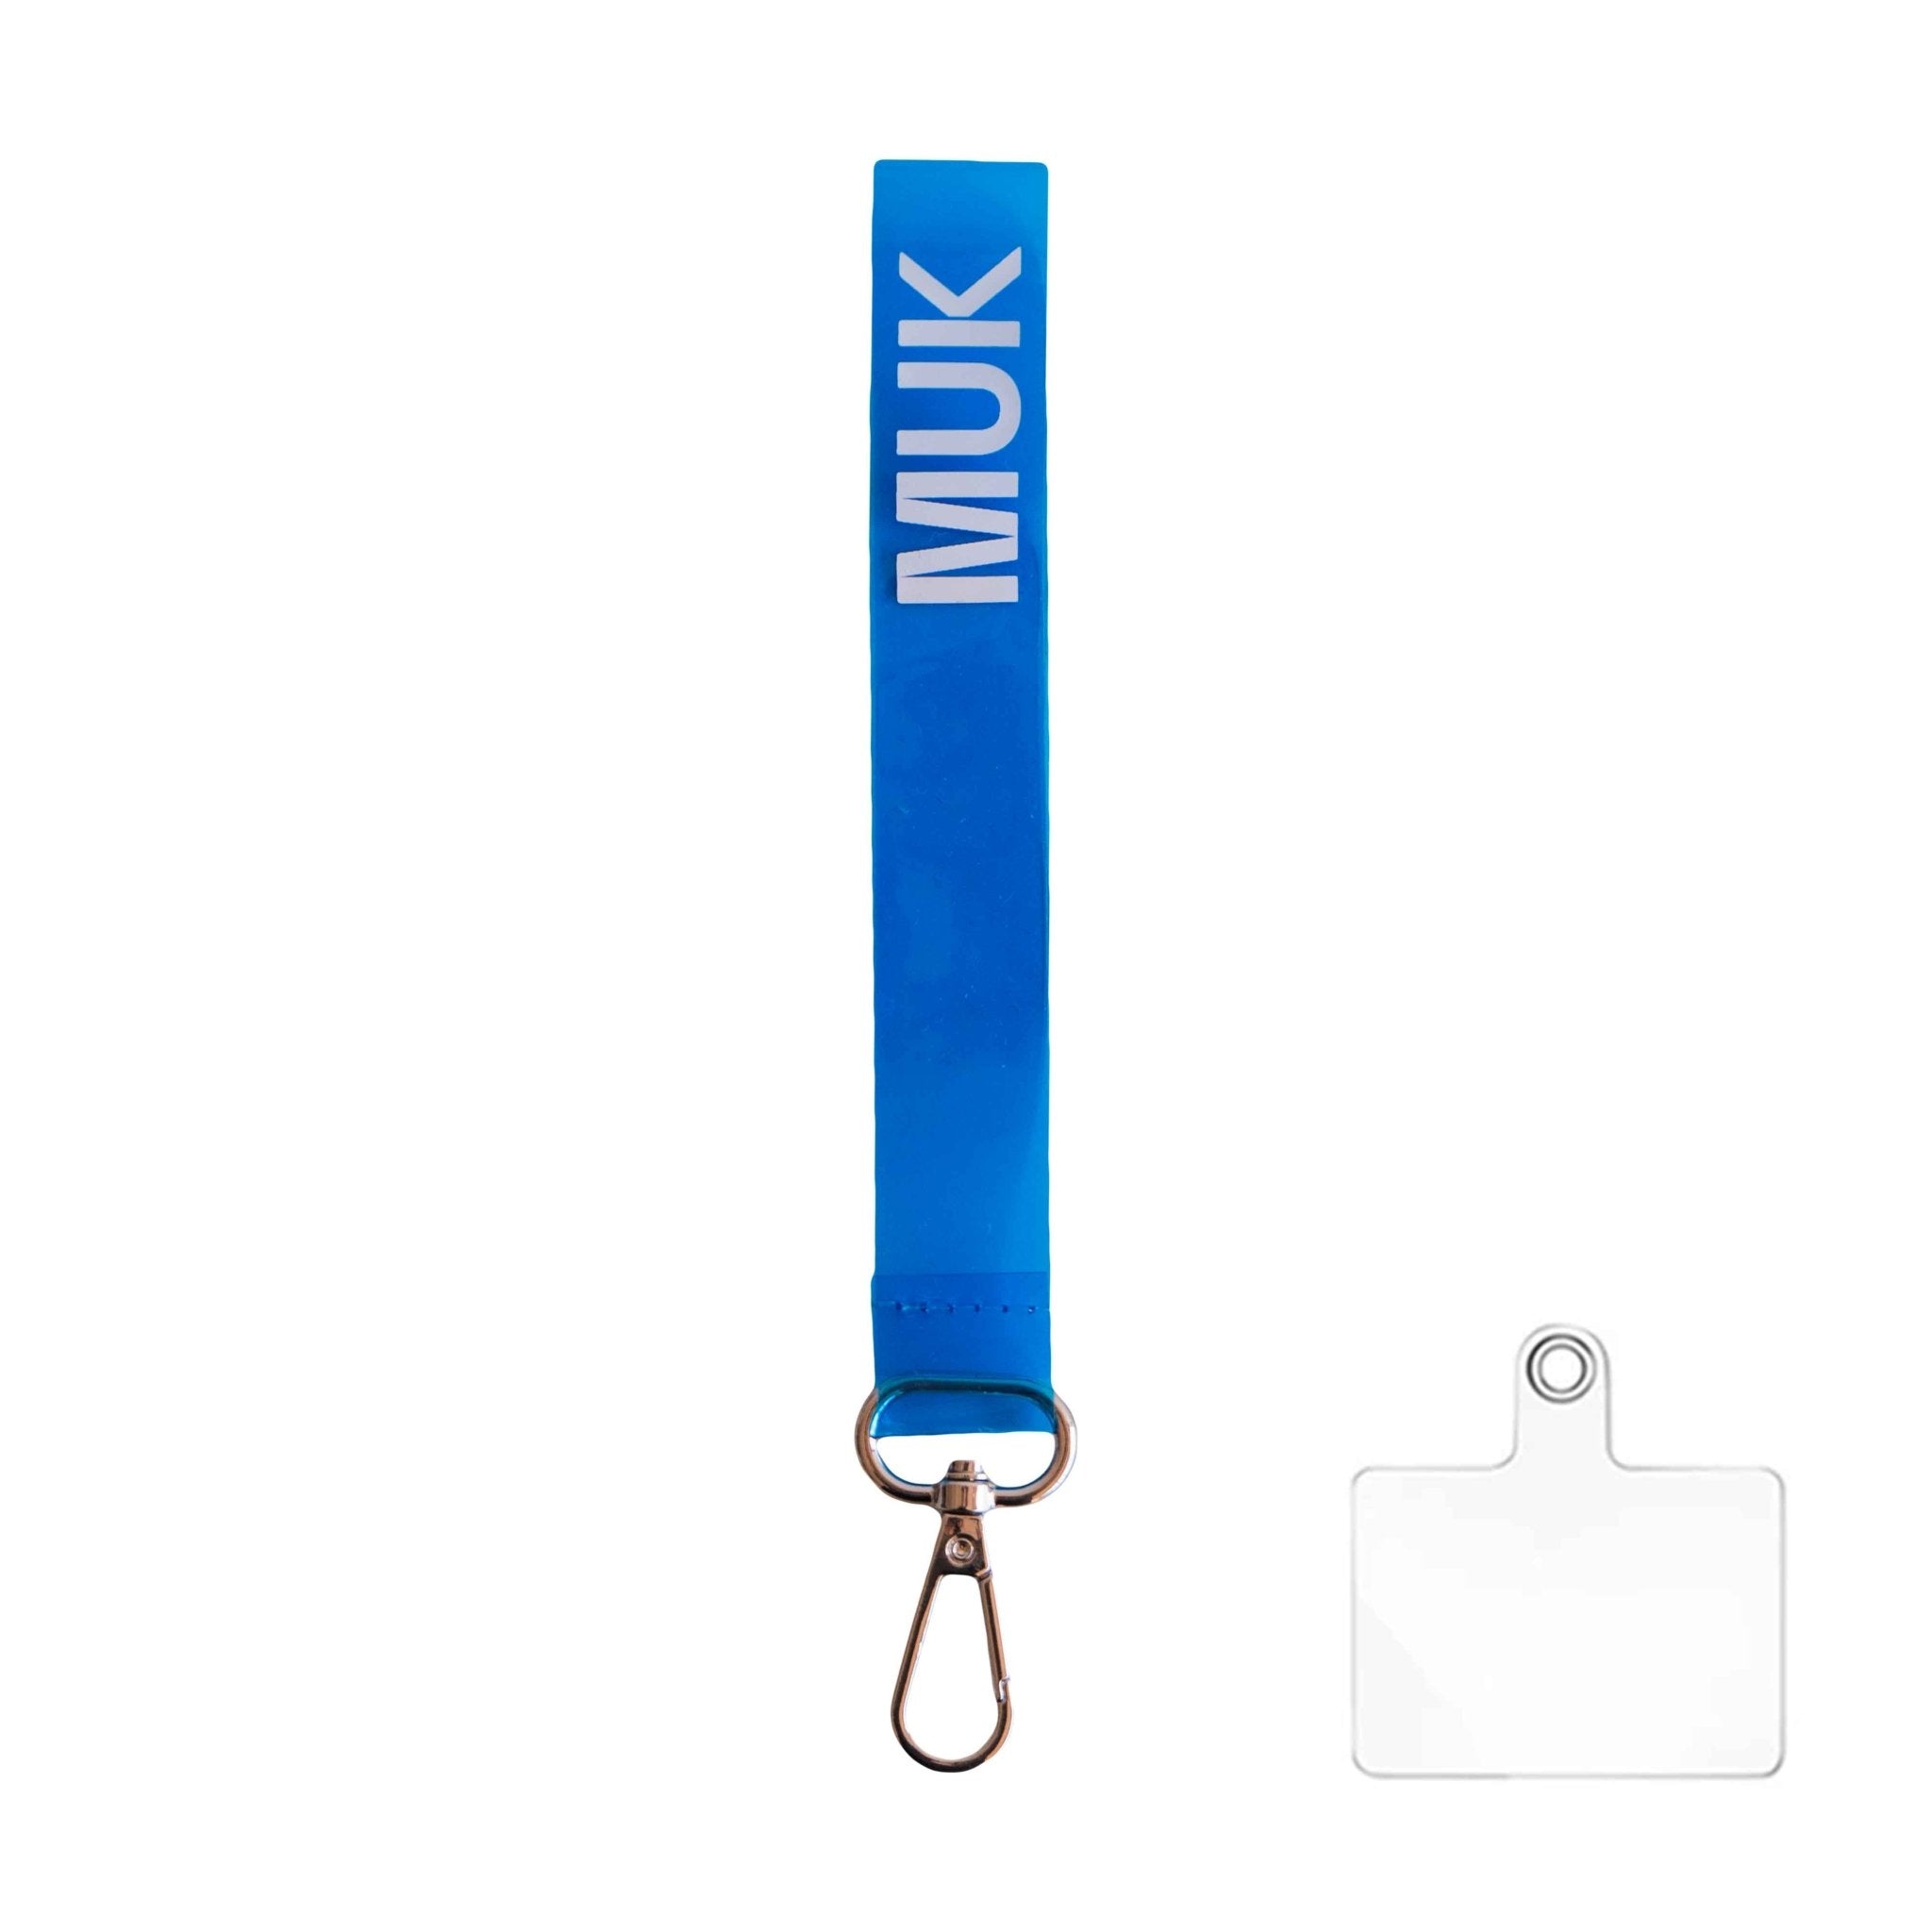 Cuerda semitransparente de color azul flúor con la opción de personalización y el logo de Muk. Dispone de un mosquetón para poder usar como phonestrap con el adaptador de cuerda universal (incluido), o bien, como llavero.
